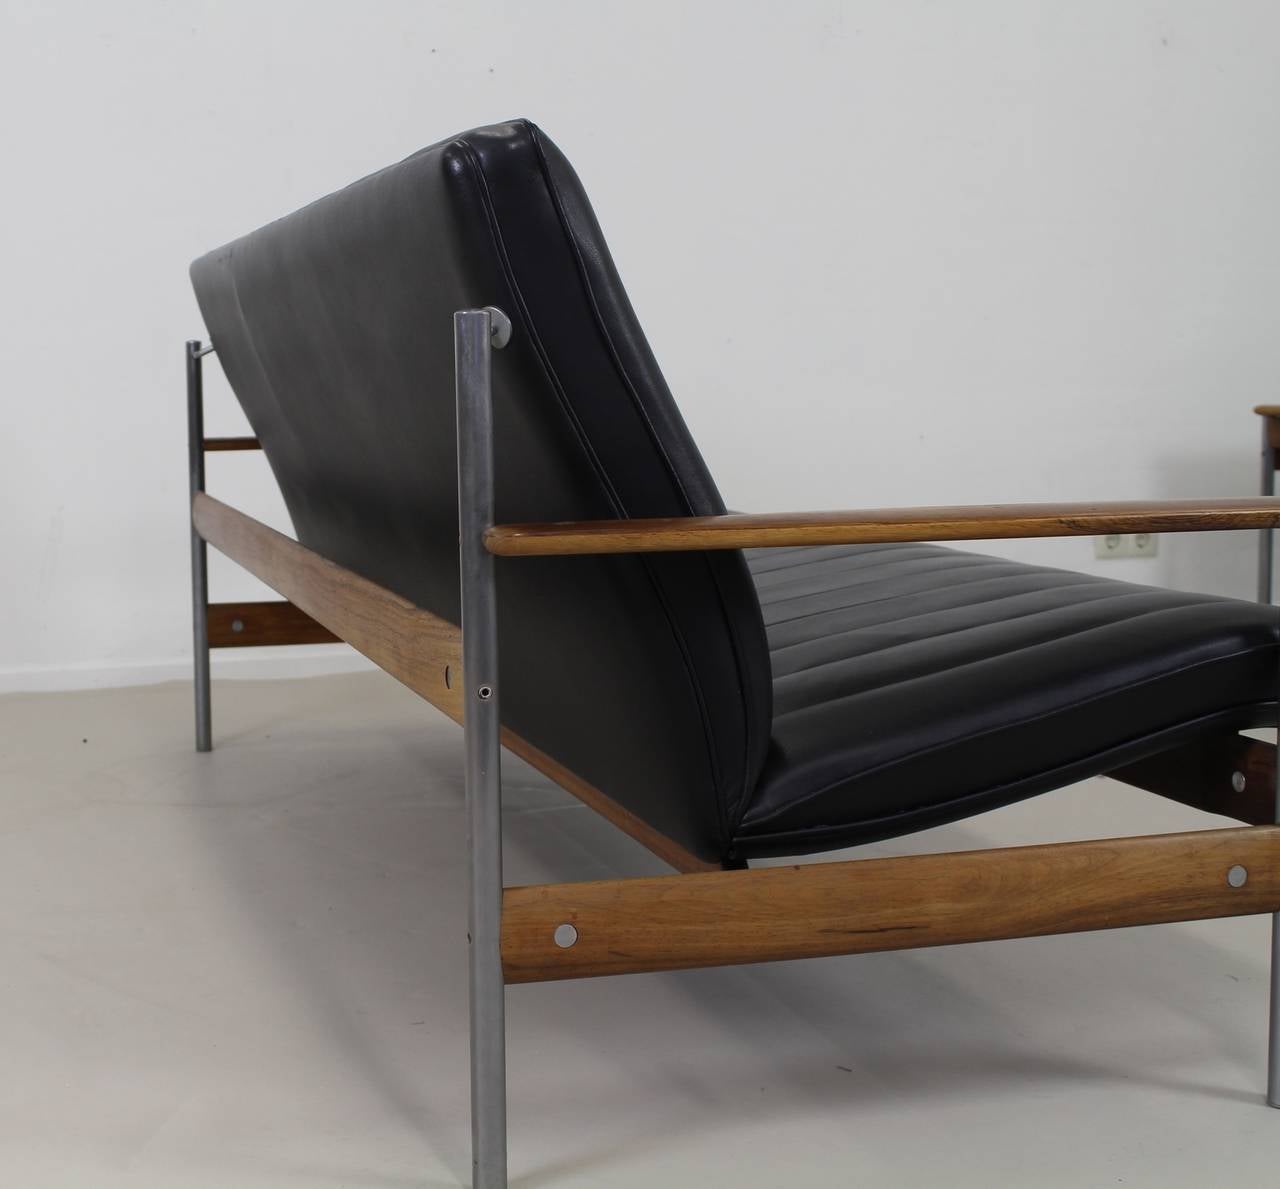 Designer: Sven Ivar Dysthe.
Manufacturer: Dokka Mobler, Norway.
Model: 1001AX.
Brushed steel frame.
Rosewood frame and armrests.
Black leather upholstery.